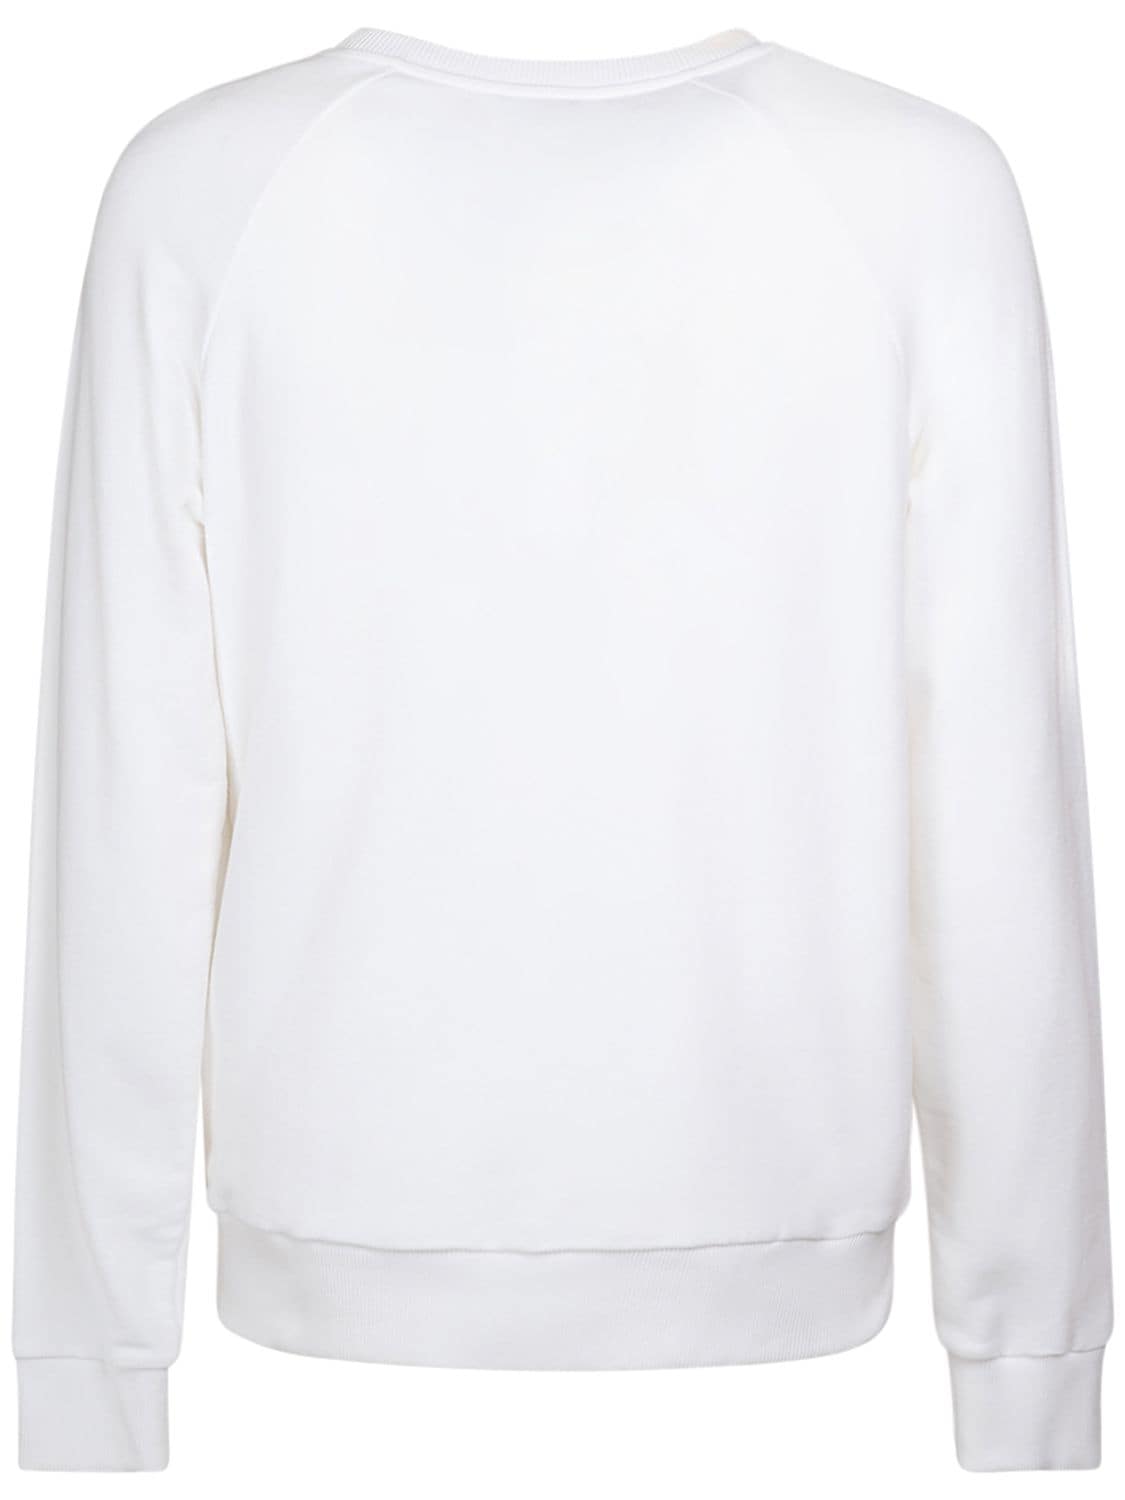 Shop Balmain Logo Printed Sweatshirt In White,black